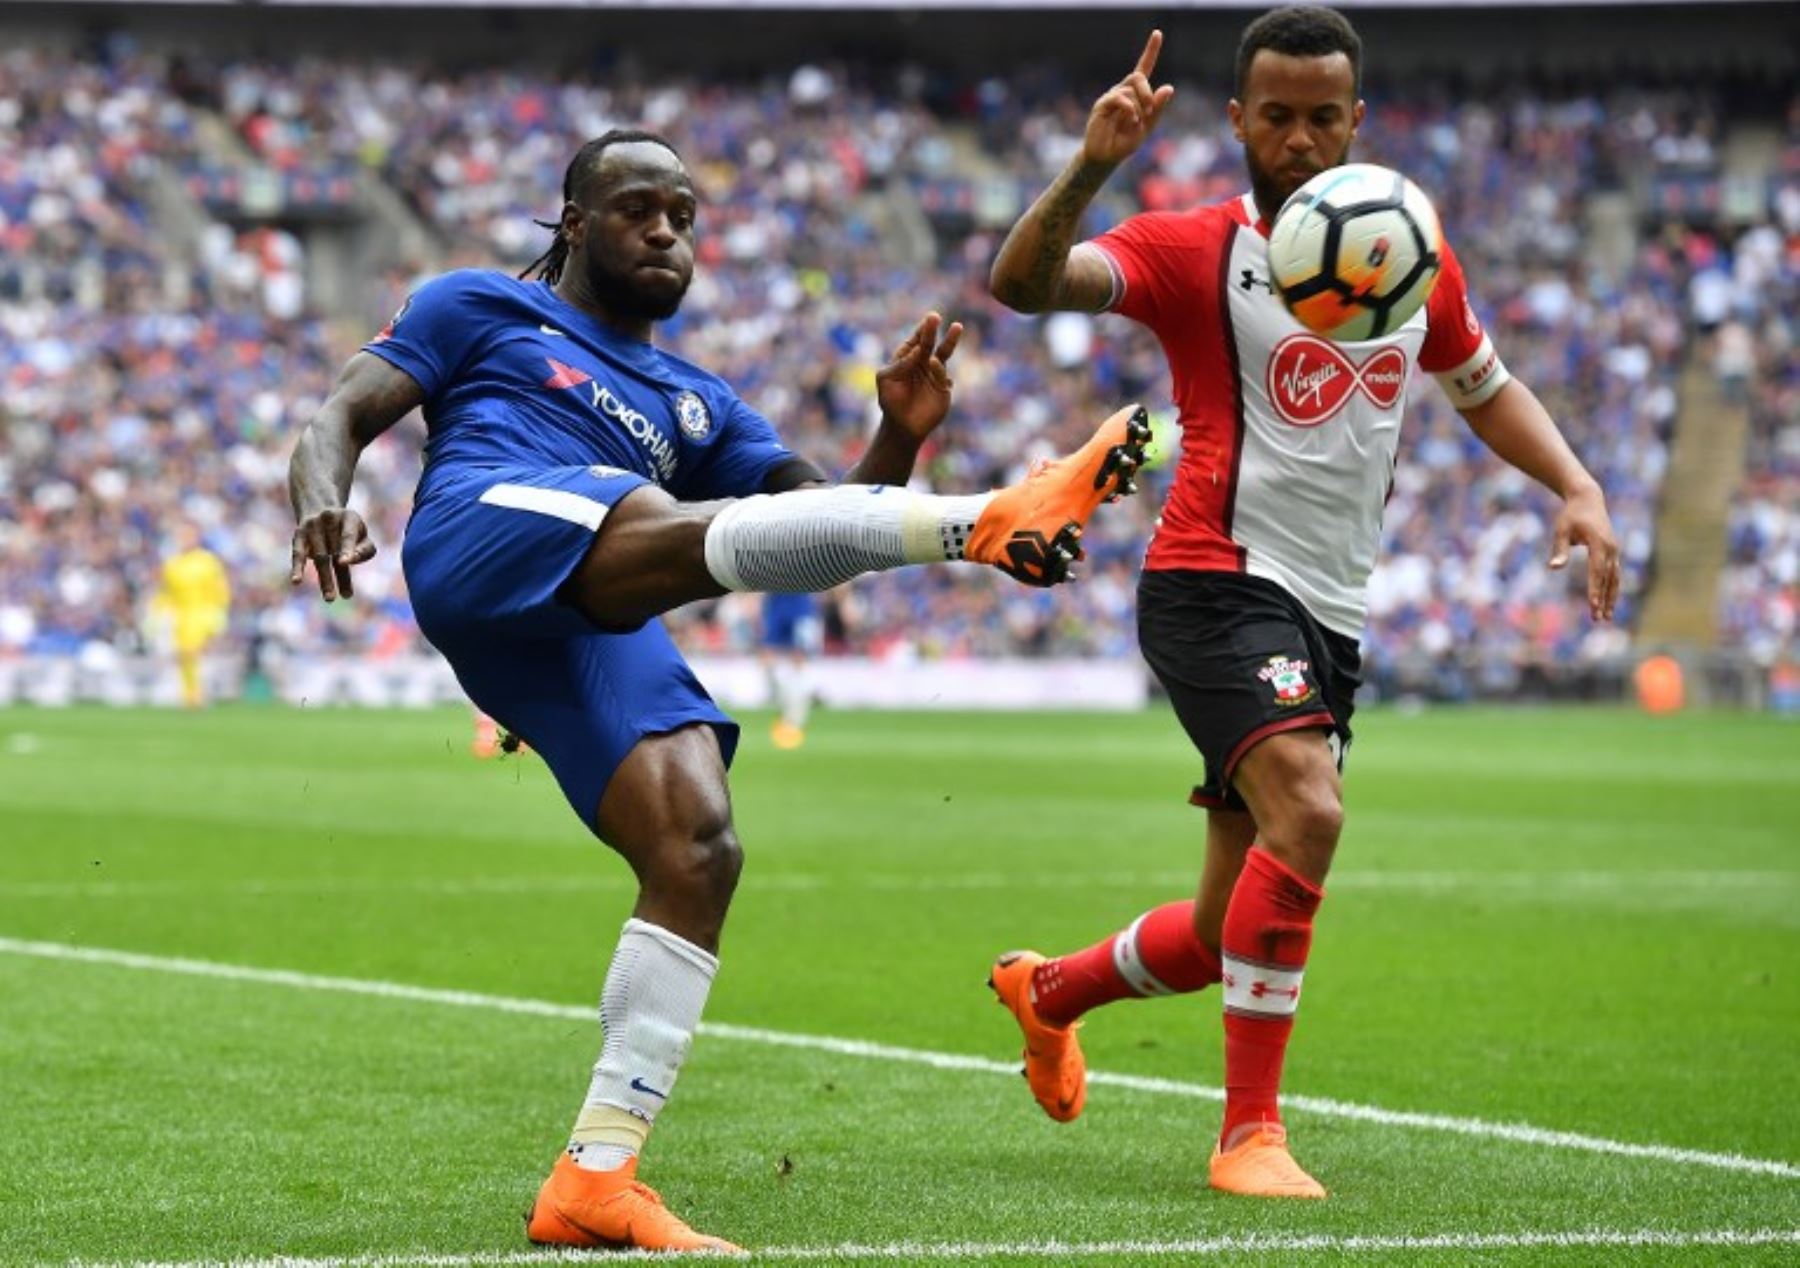 El mediocampista nigeriano del Chelsea Victor Moses compite con el defensor inglés Southampton del Liverpool Ryan Bertrand durante el partido de fútbol de la semifinal inglesa FA Cup.Foto:AFP